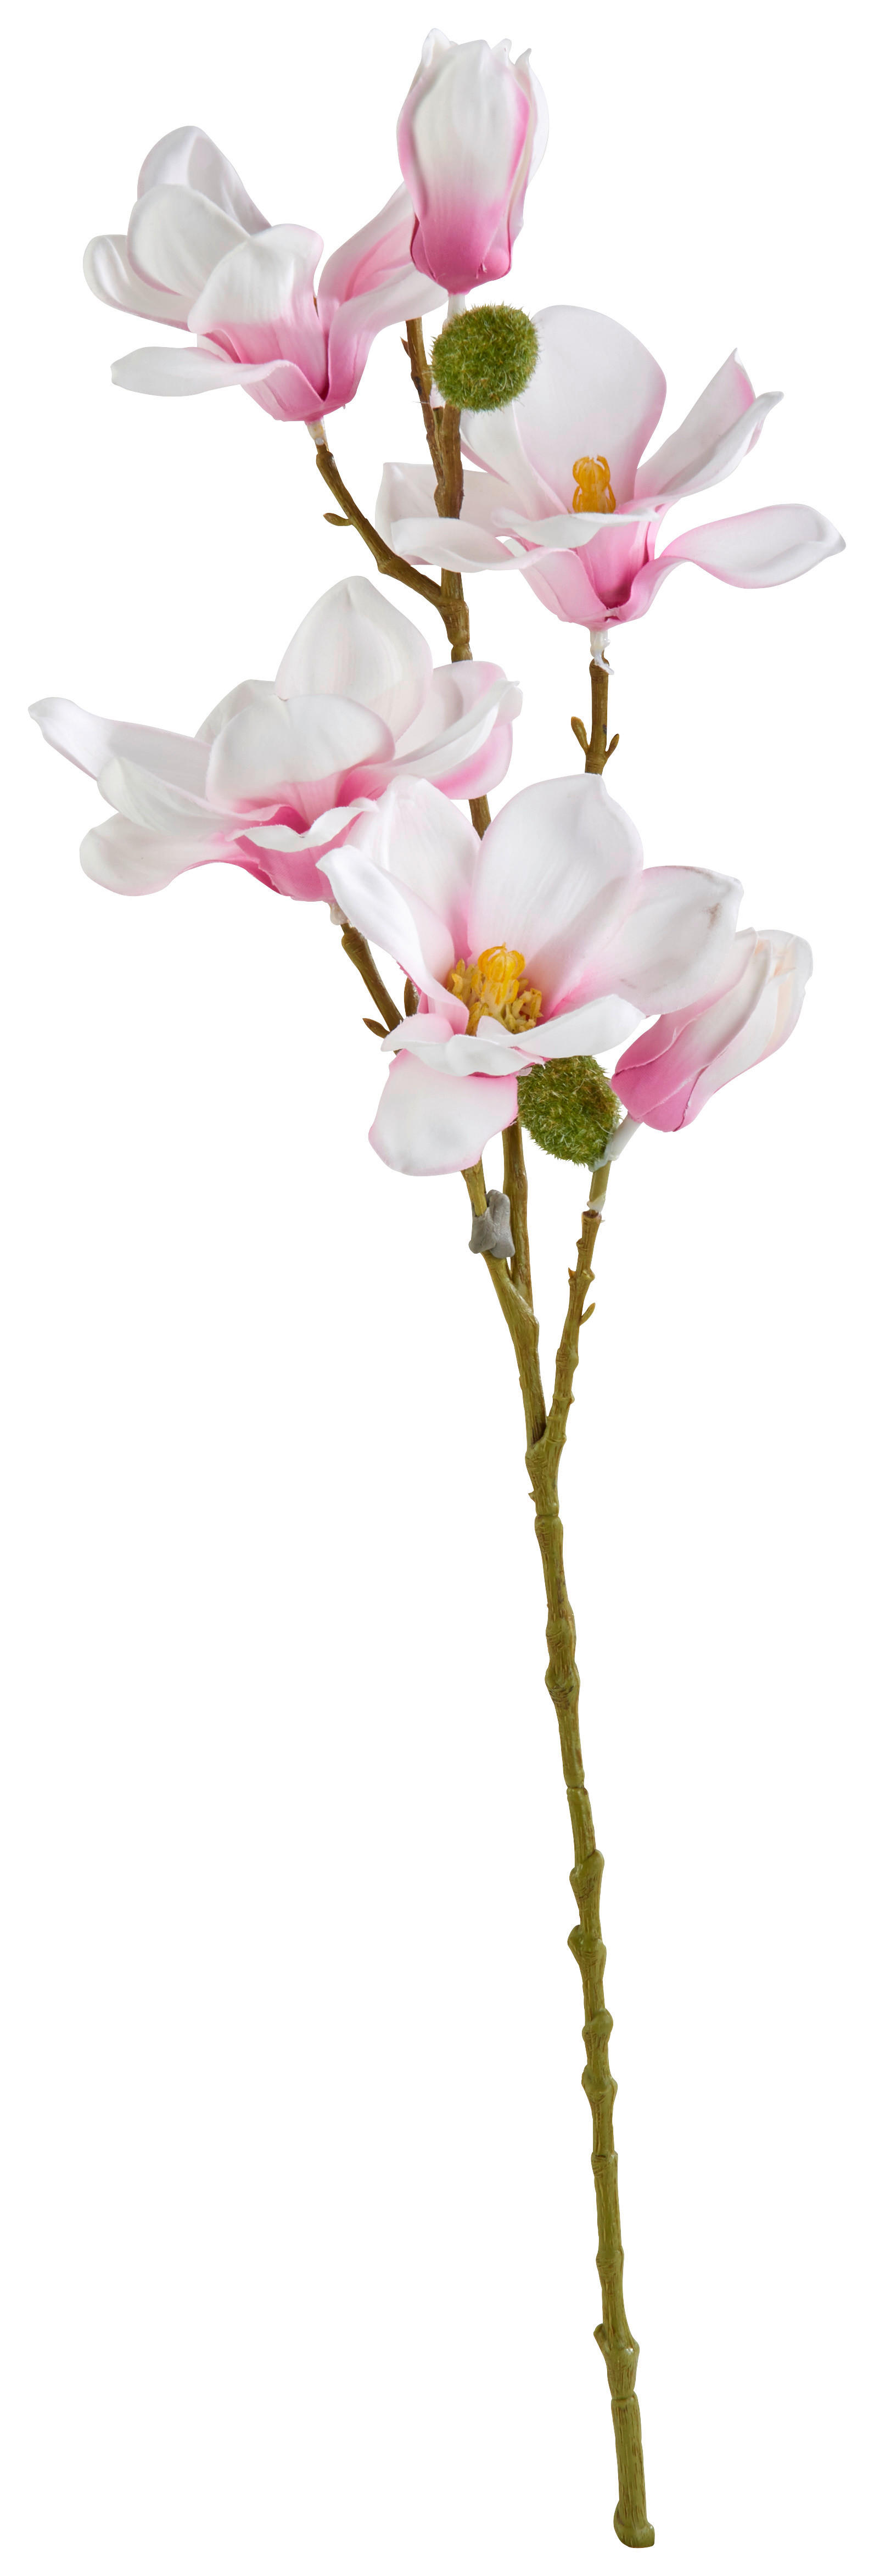 DEKORAČNÁ VETVIČKA 66 cm - ružová, biela